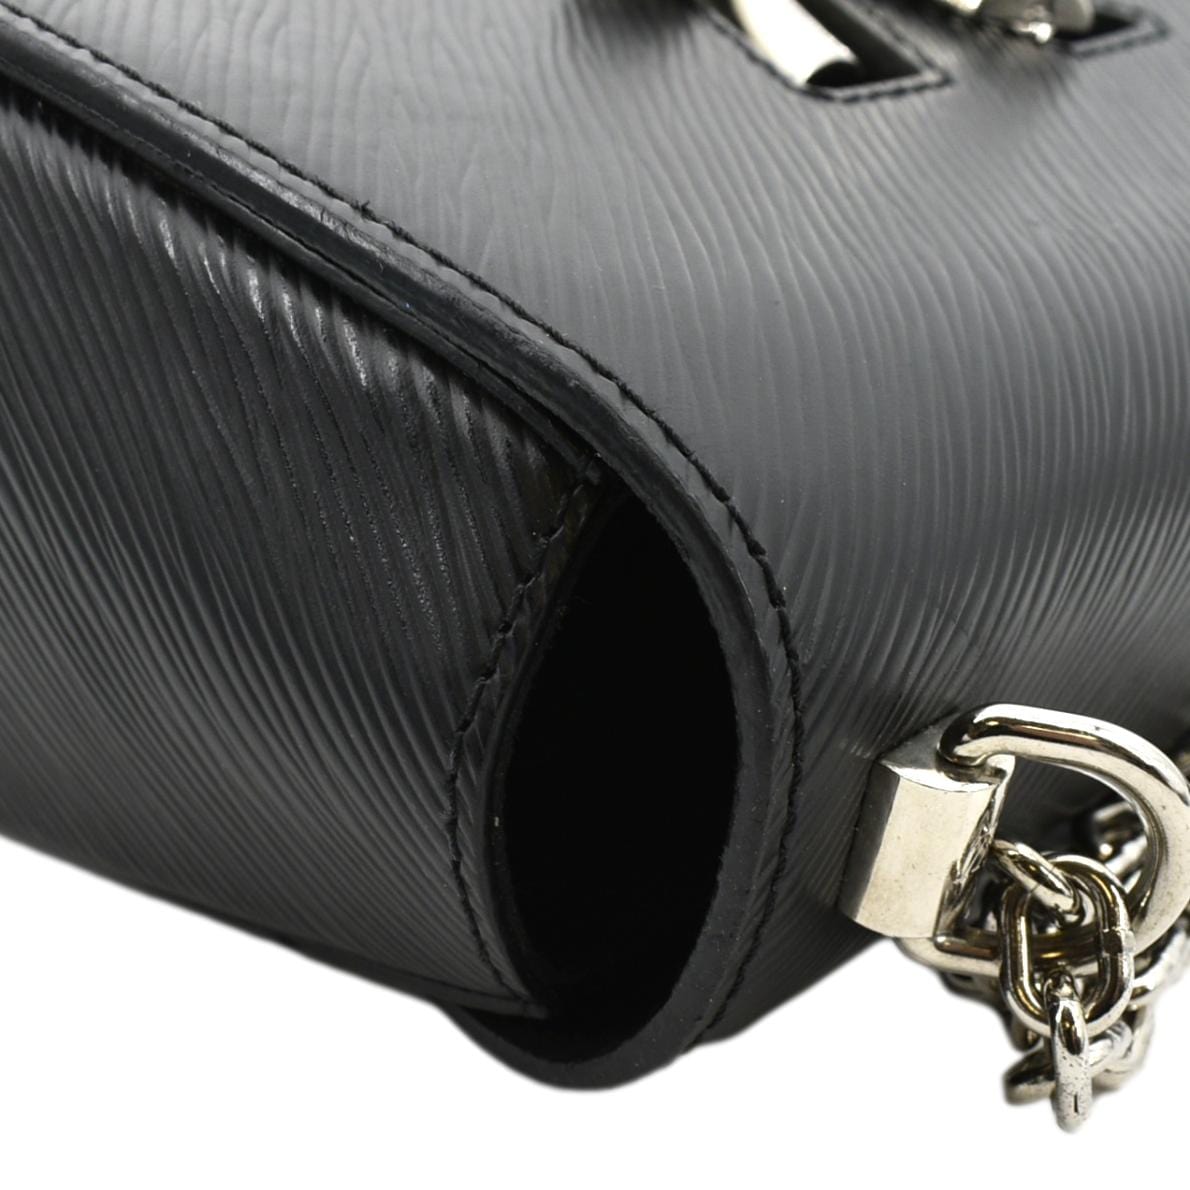 LOUIS VUITTON Twist Patent Shoulder bag in Black Patent leather